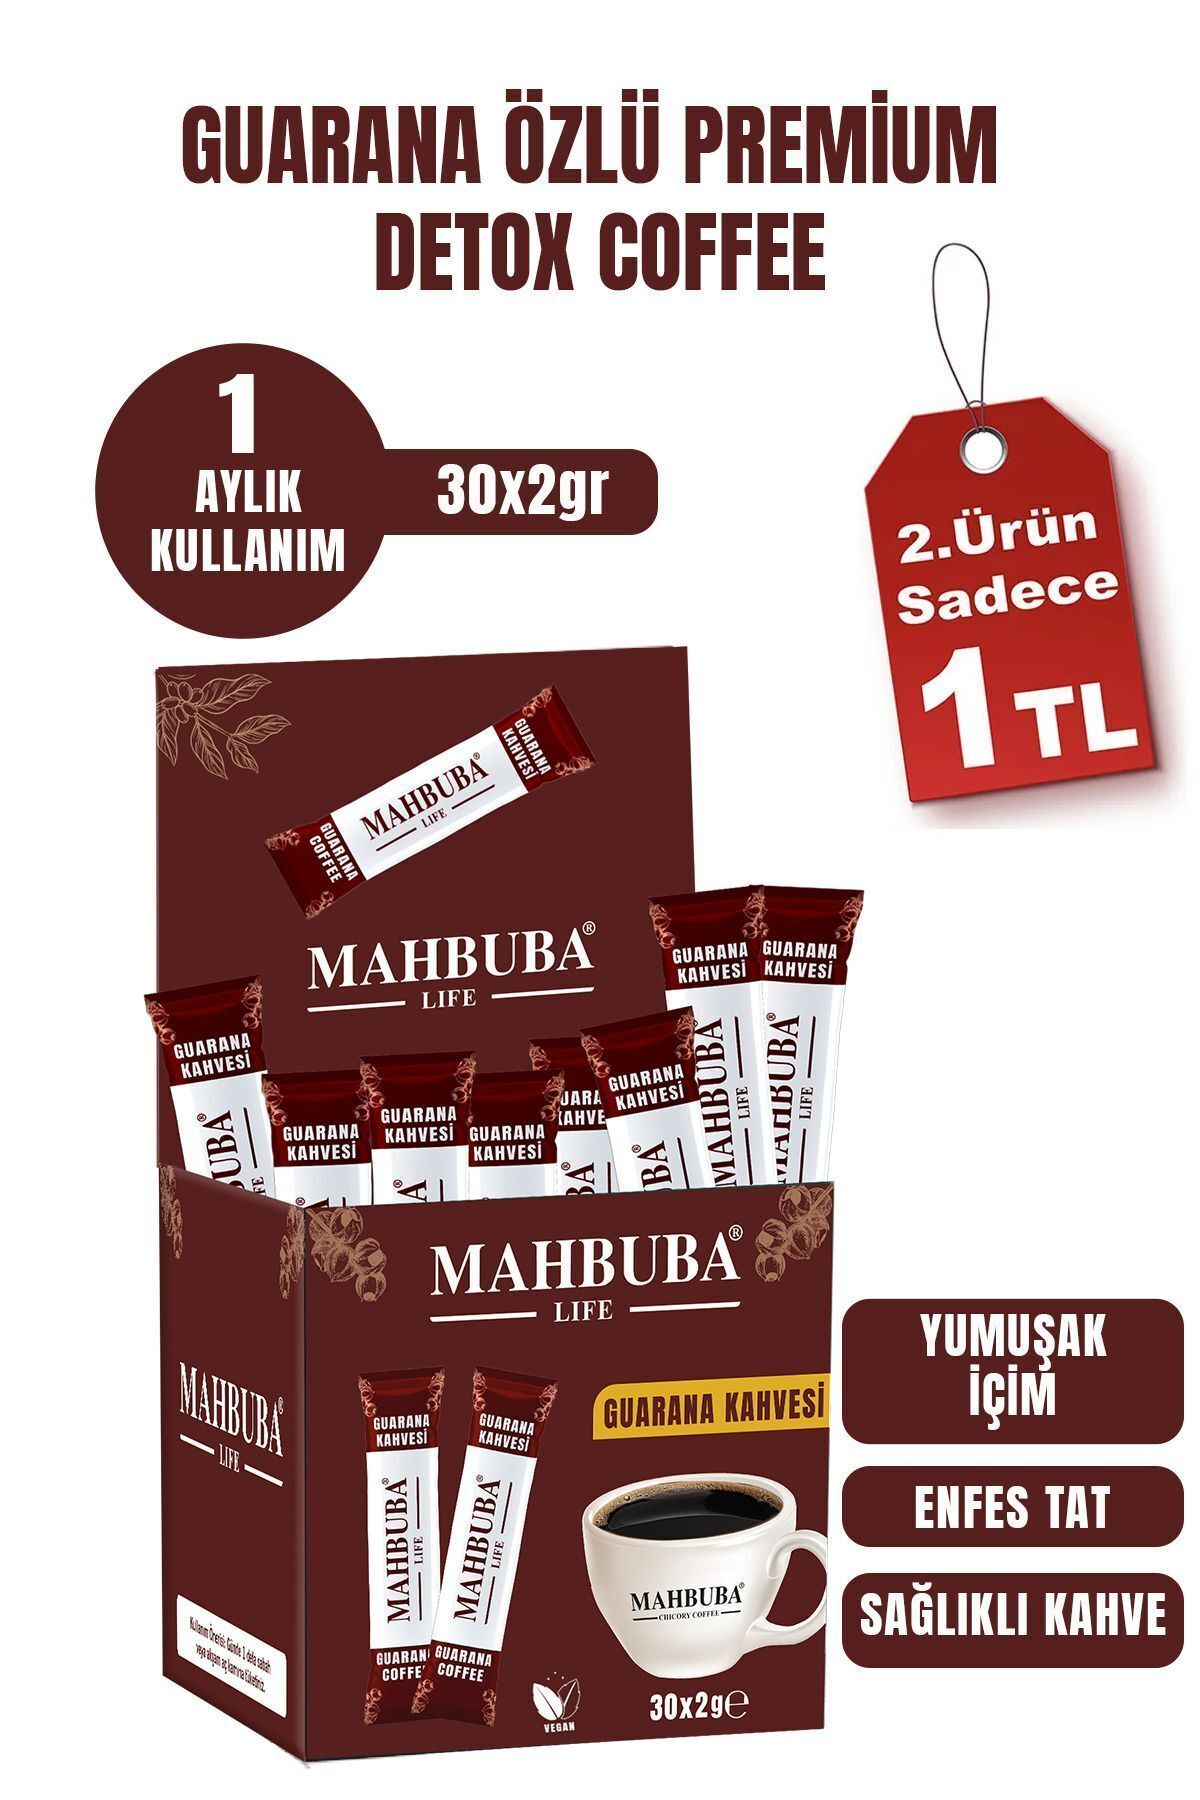 Mahbuba Life Guarana Özlü Premium Detoks Diyet Zayıflama Kahvesi Gün Boyu Enerji 1 Aylık Kullanım 30x2gr